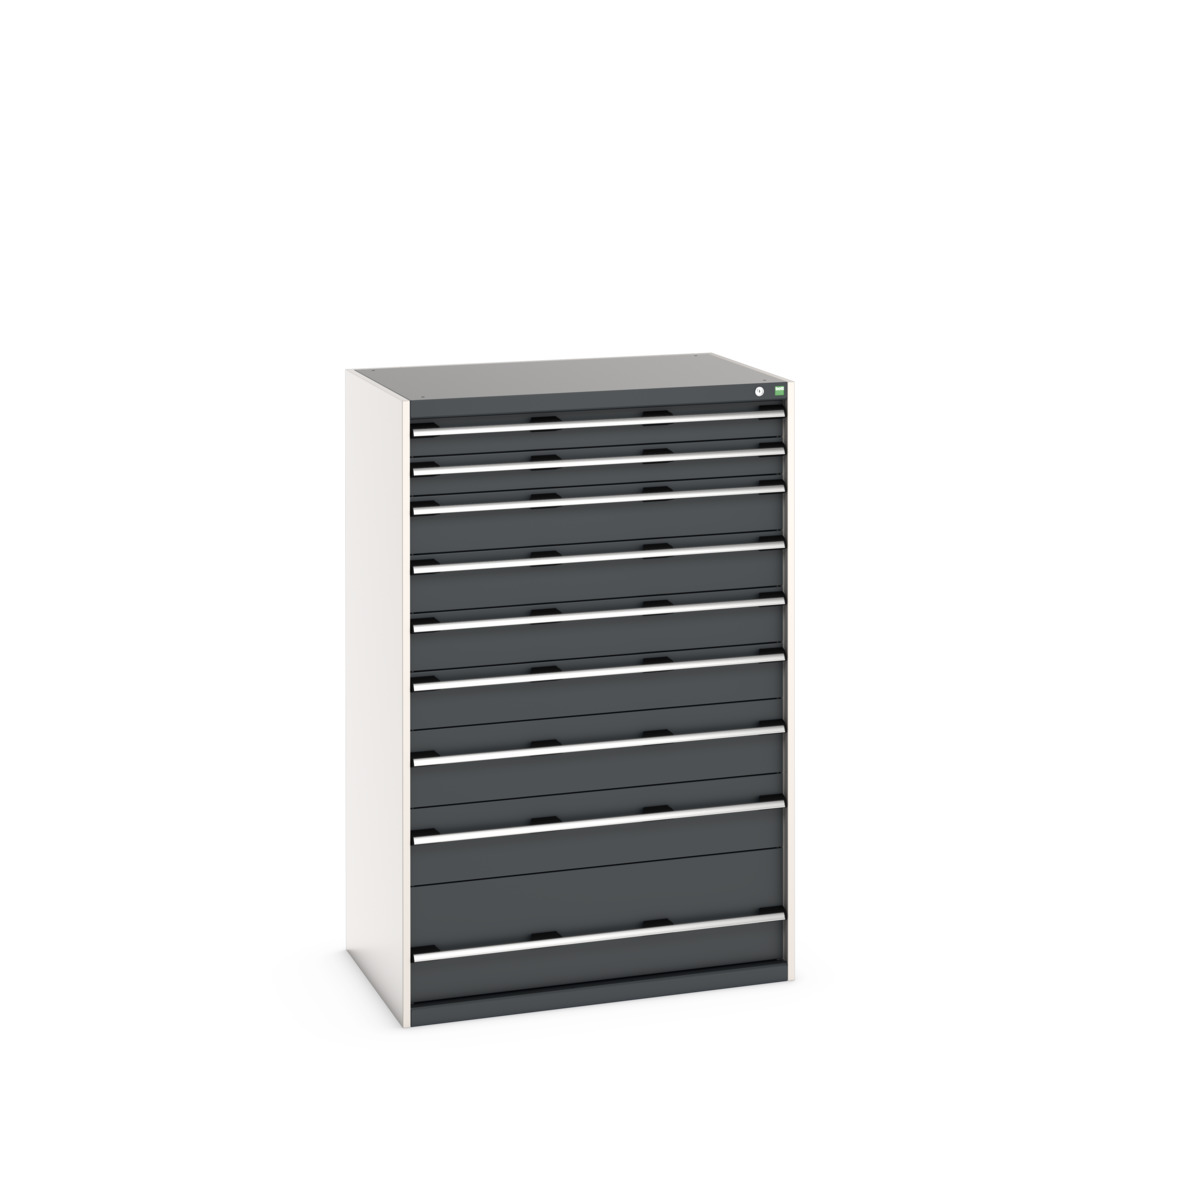 40029035.19V - cubio drawer cabinet